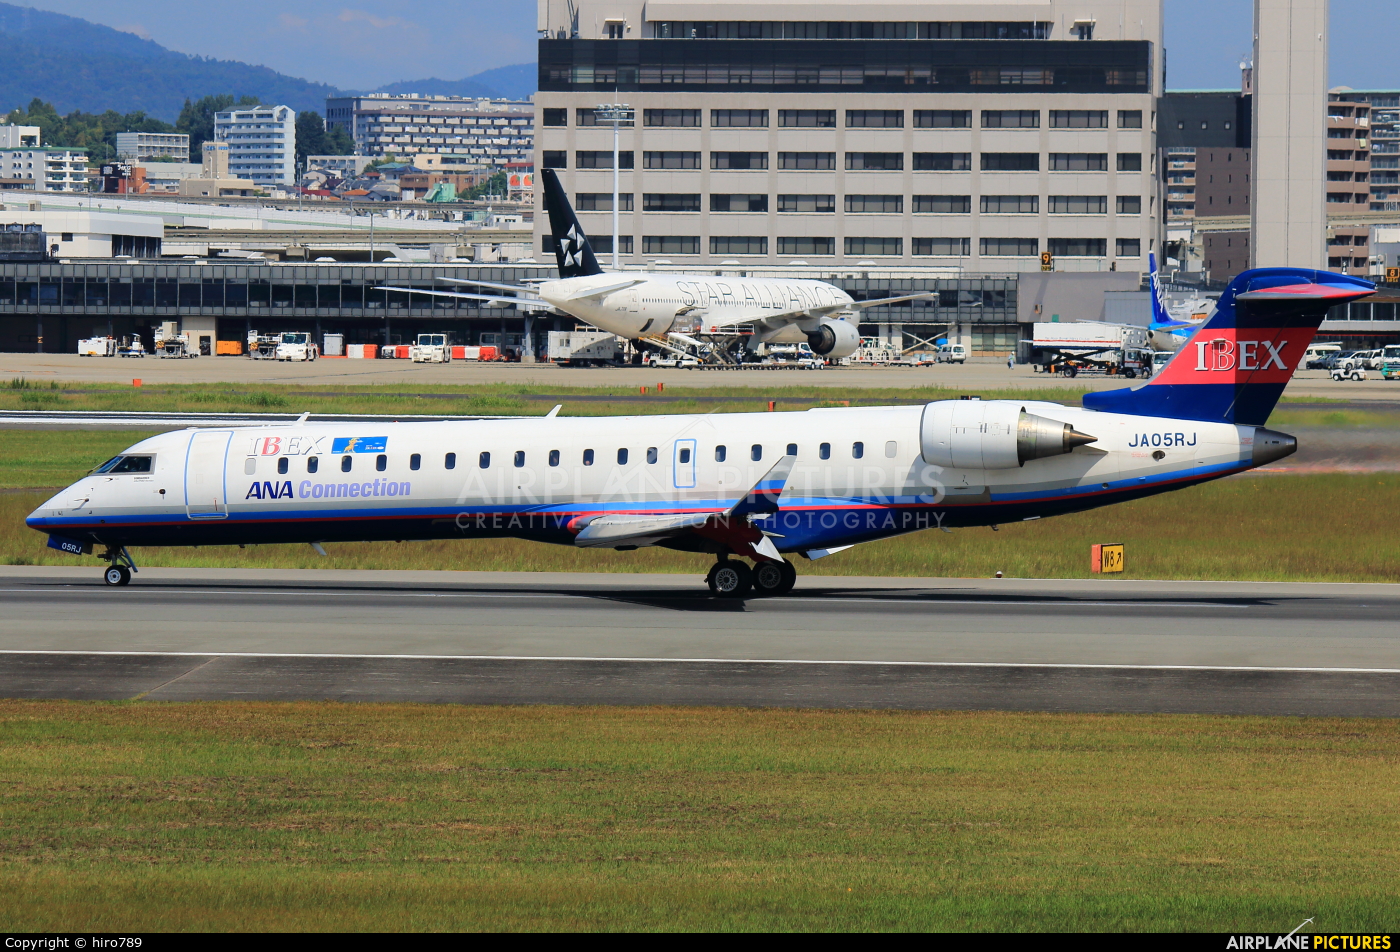 Ibex Airlines - ANA Connection JA05RJ aircraft at Osaka - Itami Intl